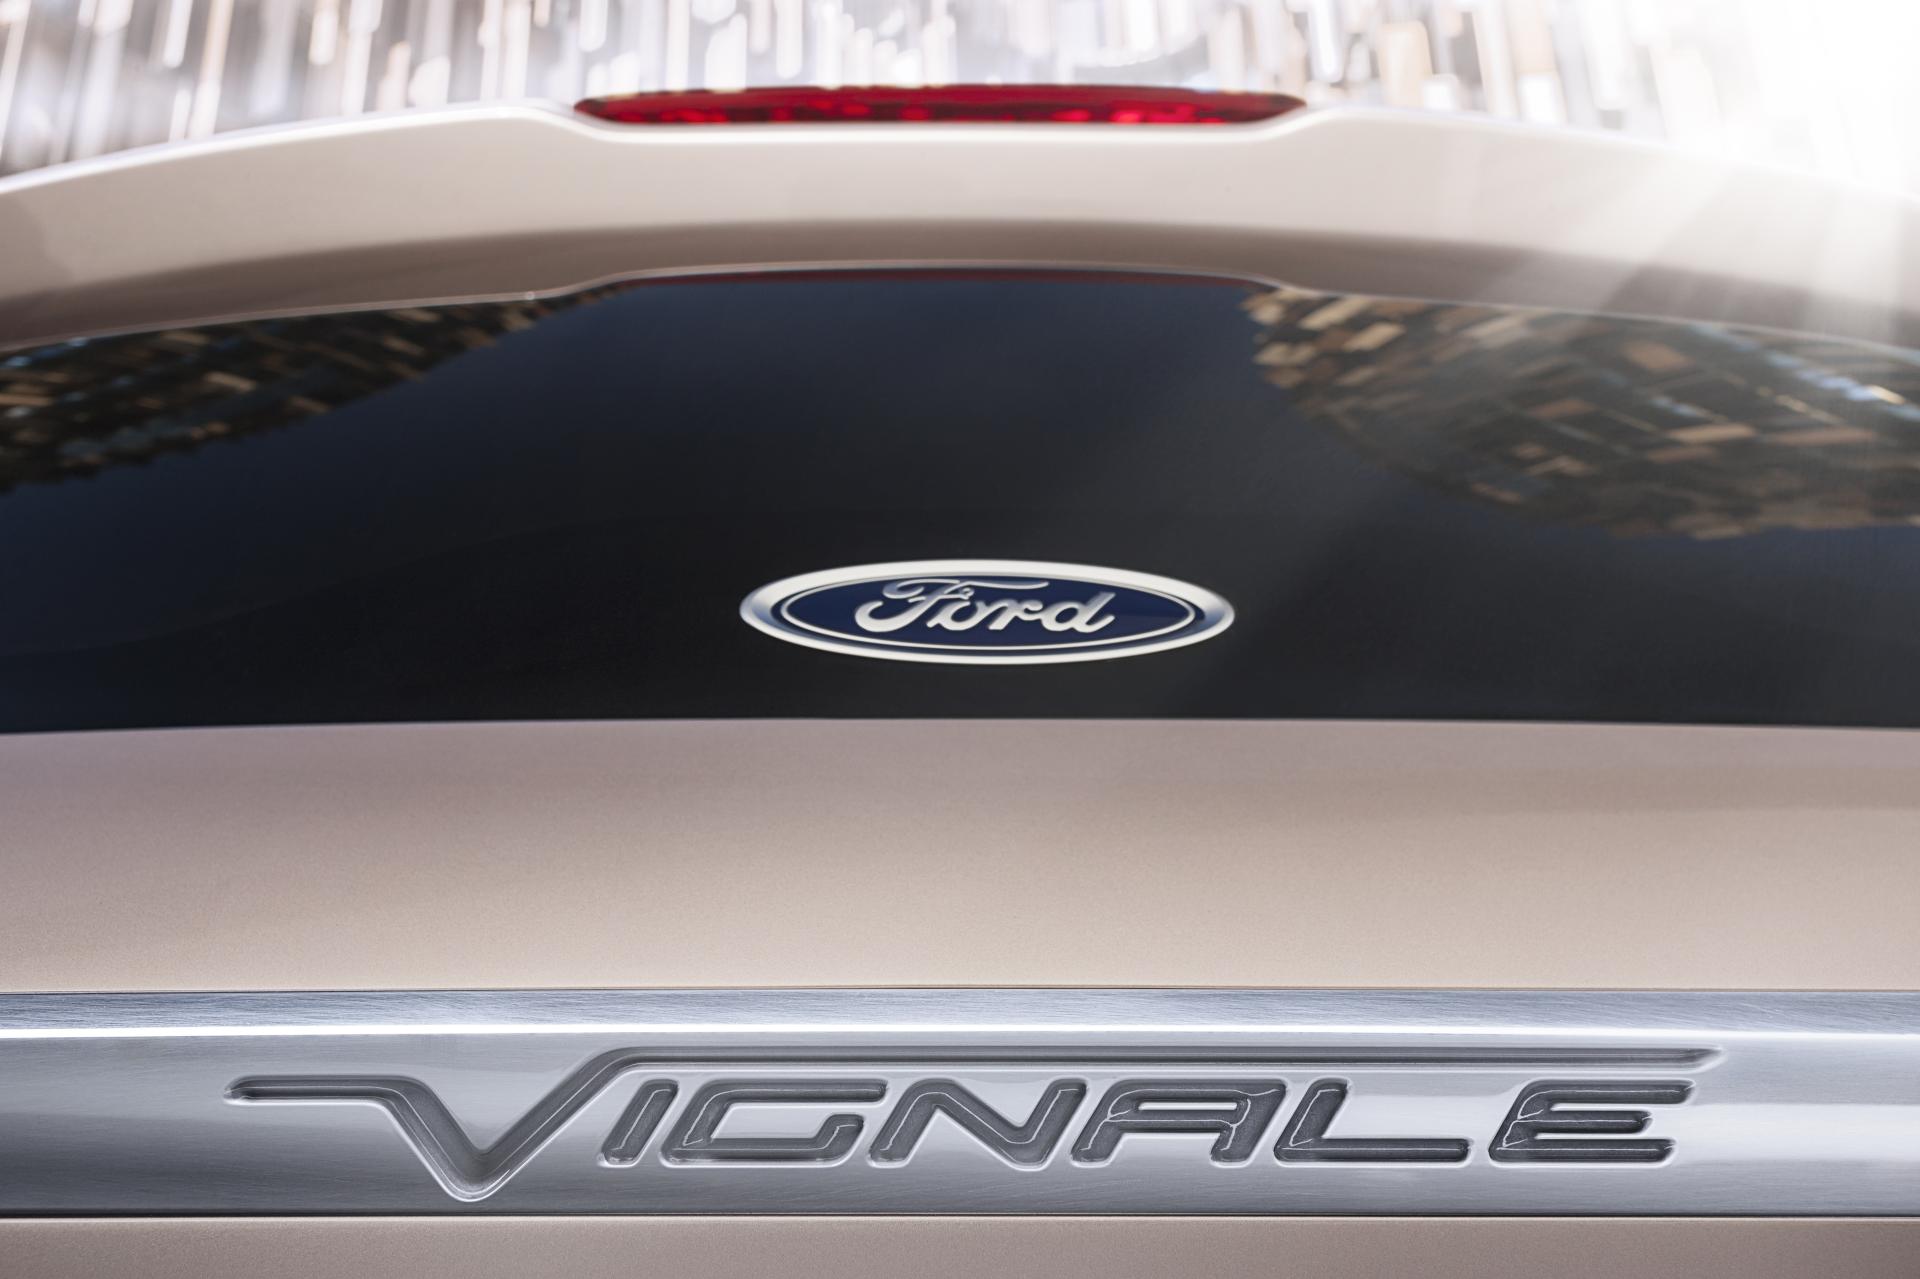 2014 Ford S-MAX Vignale Concept